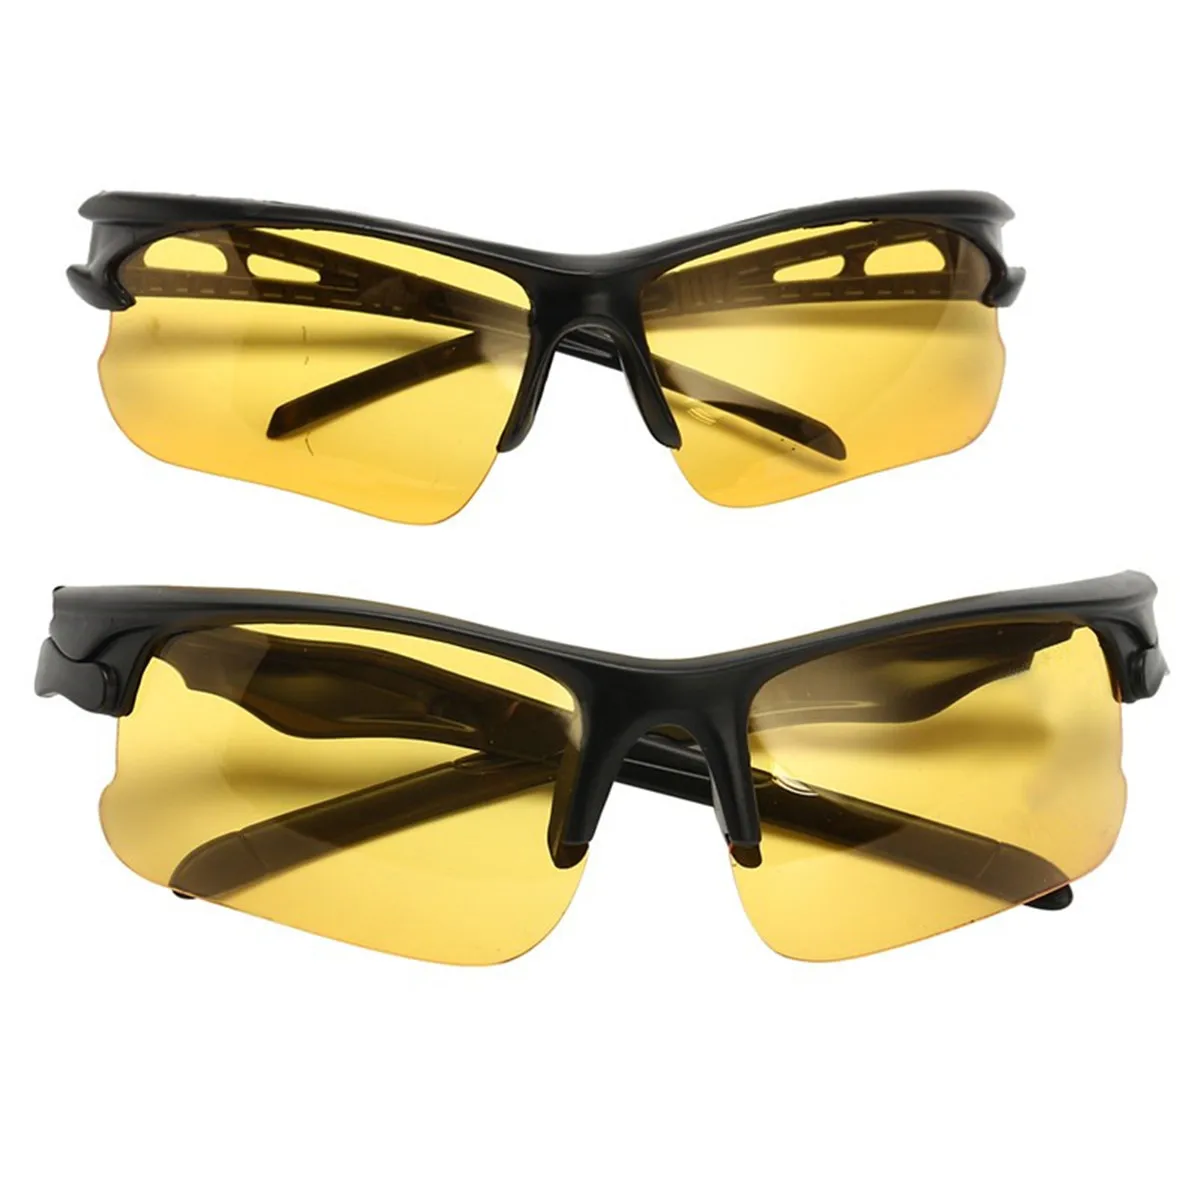 Очки ночного видения для вождения HD, антибликовые желтые солнцезащитные очки, металлические очки для ночного видения, поляризованные очки для вождения автомобиля